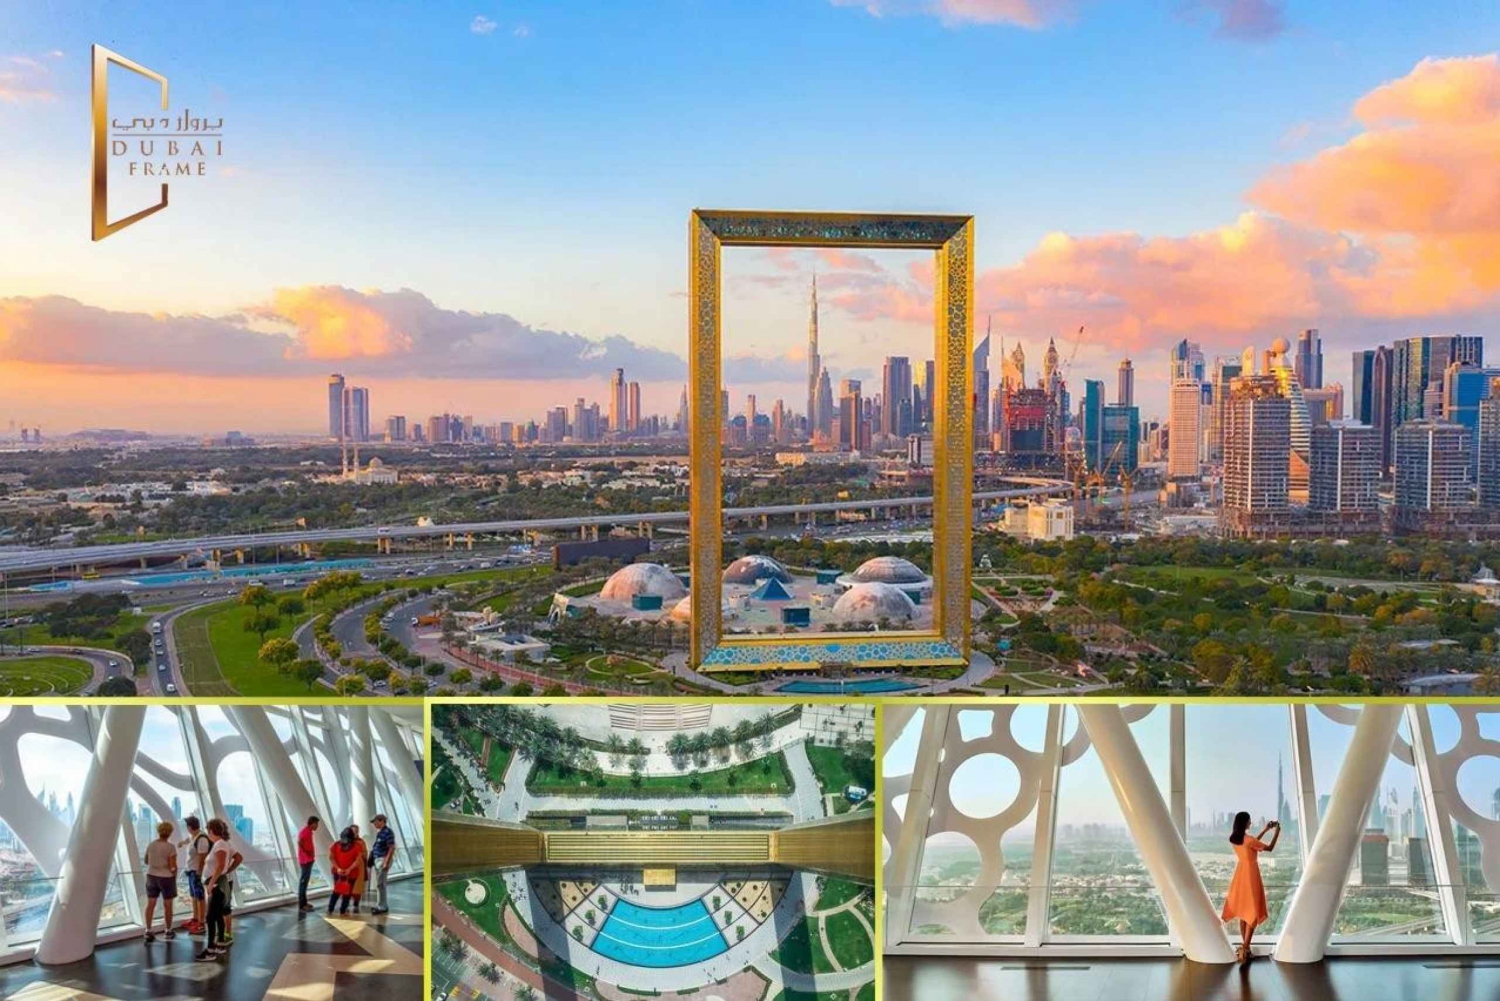 Tour della città di Dubai con tutte le attrazioni turistiche